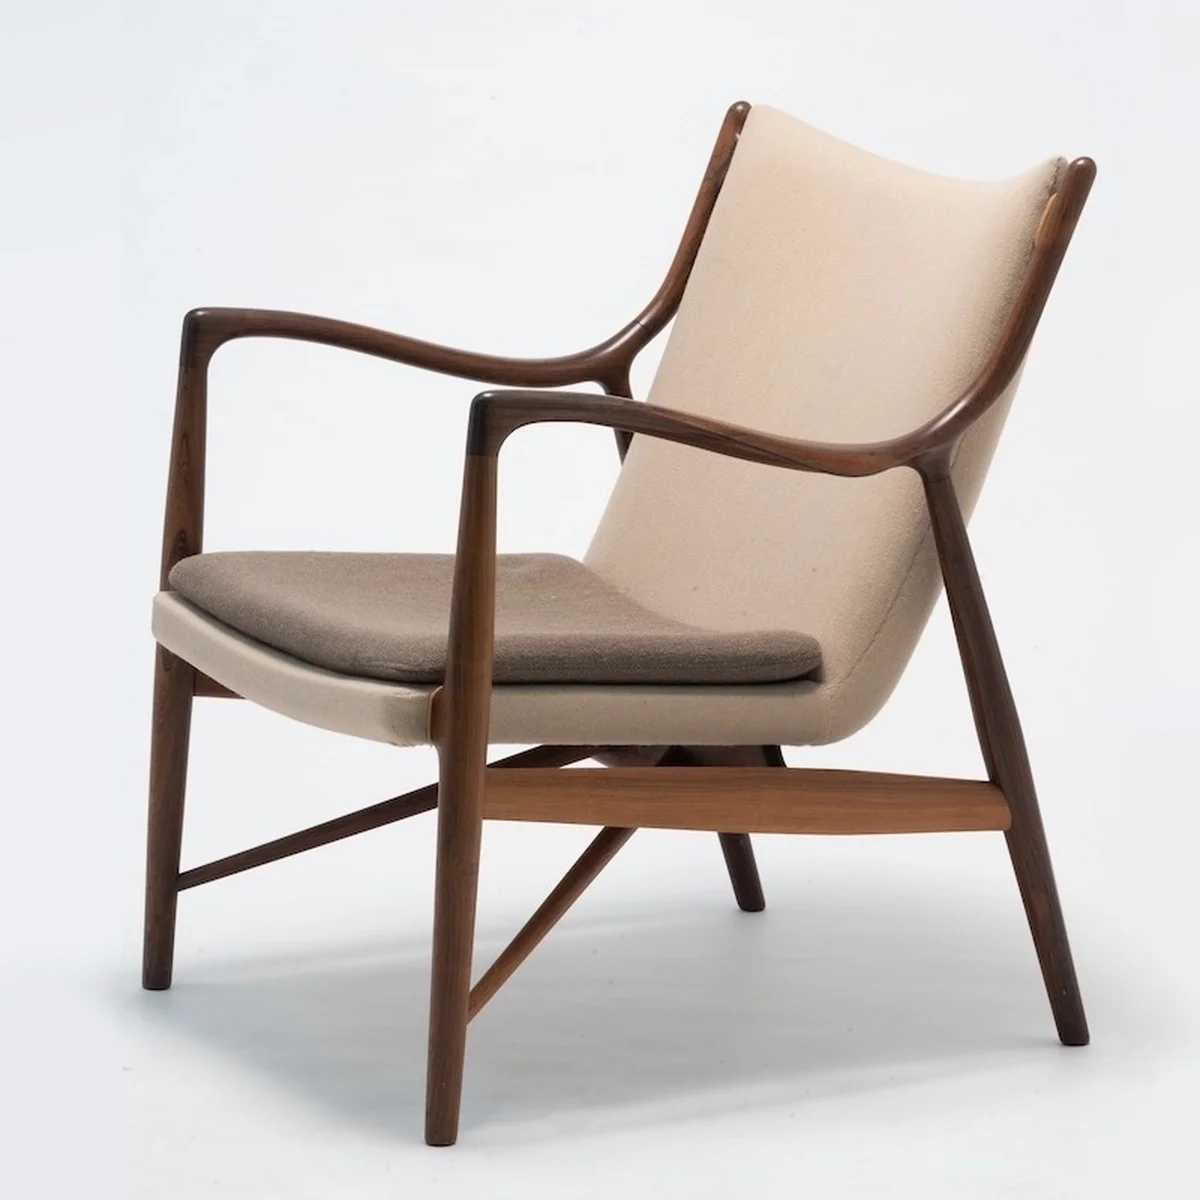 都民の日は観覧無料！ 「フィン・ユールとデンマークの椅子」、東京都美術館